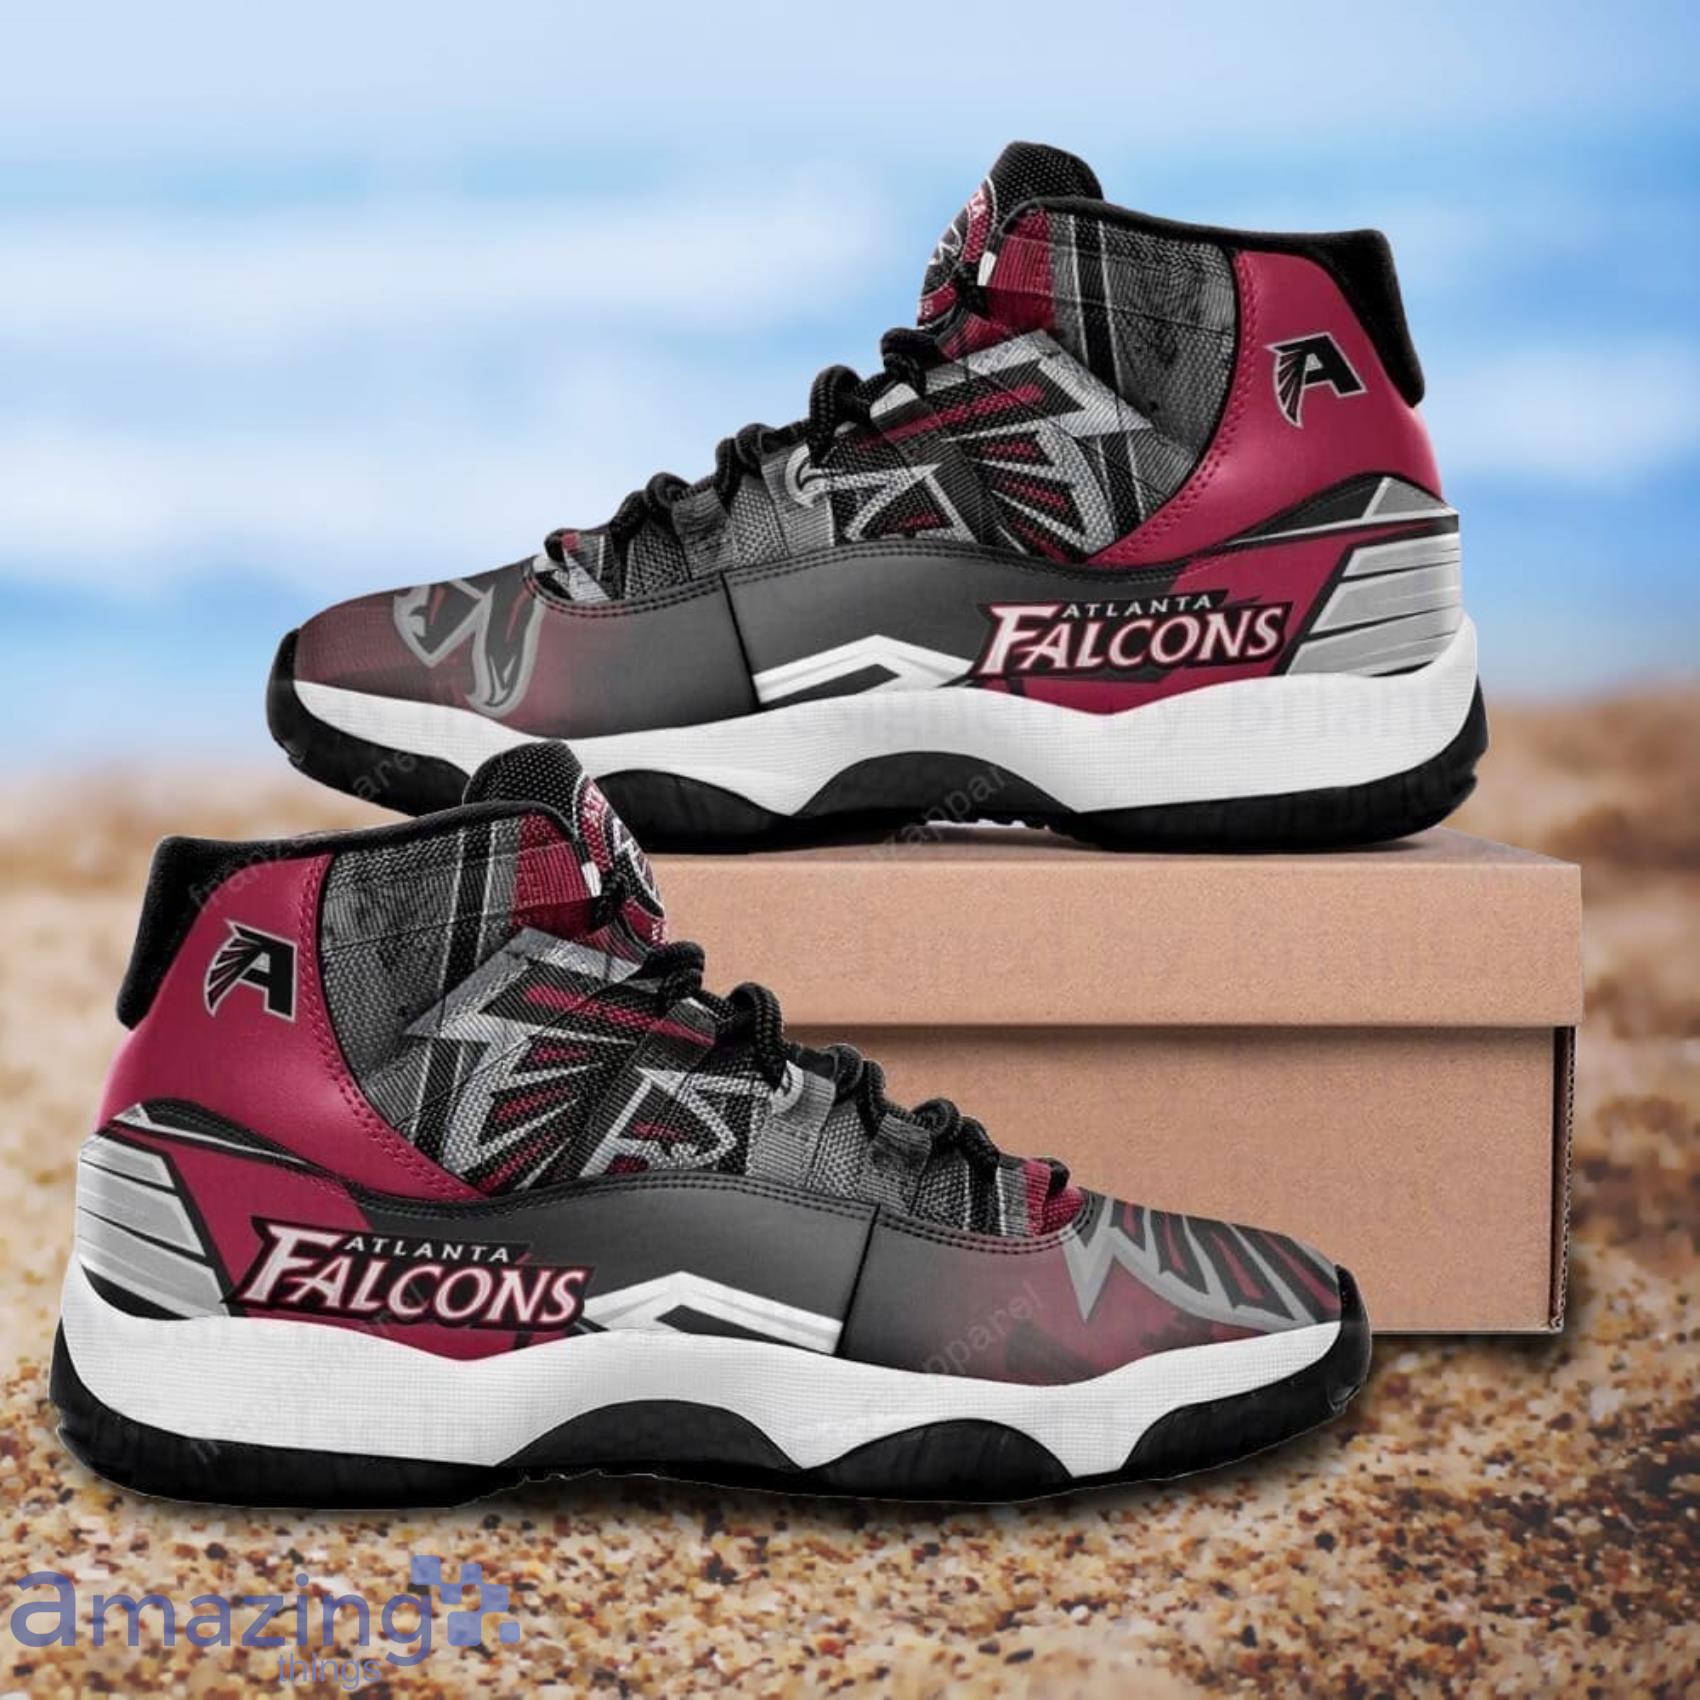 Atlanta Falcons Personalized Full Print Air Jordan 11 Shoes For